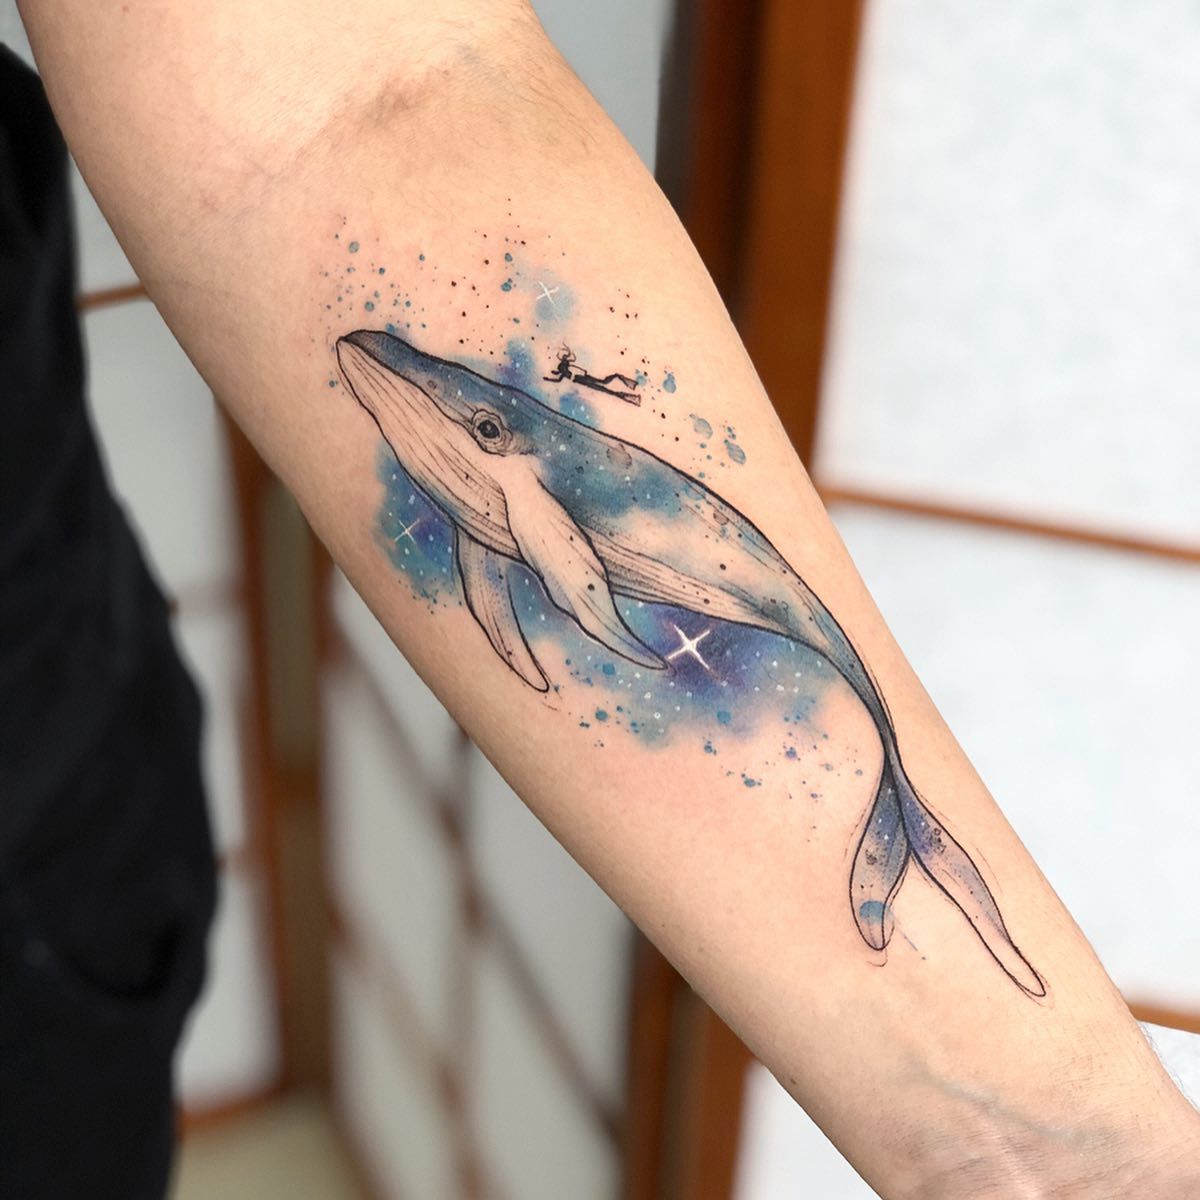  whale space tattoo  Tattoos Space tattoo Tattoo designs